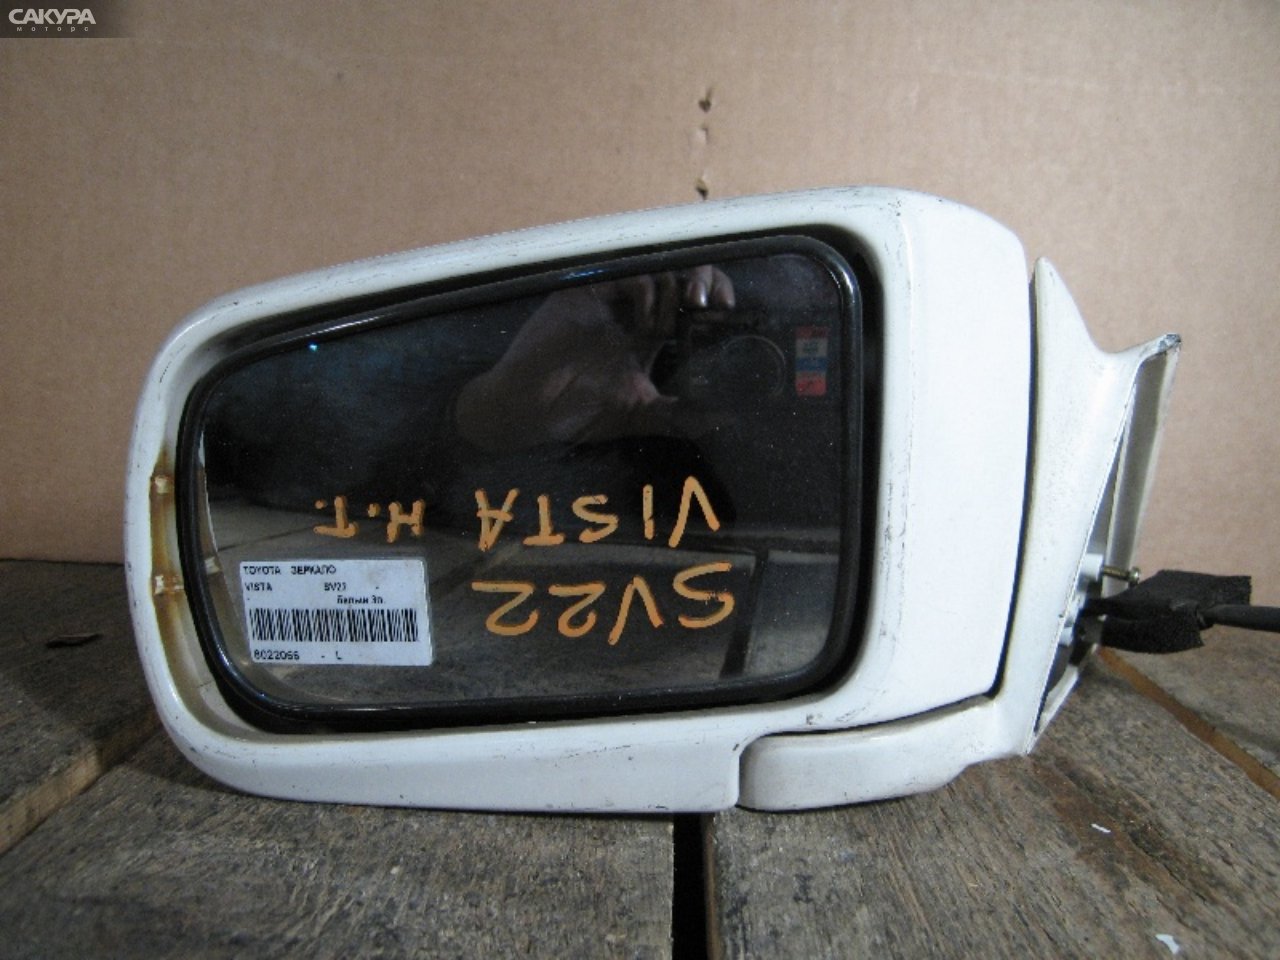 Зеркало боковое левое Toyota Vista SV22: купить в Сакура Абакан.